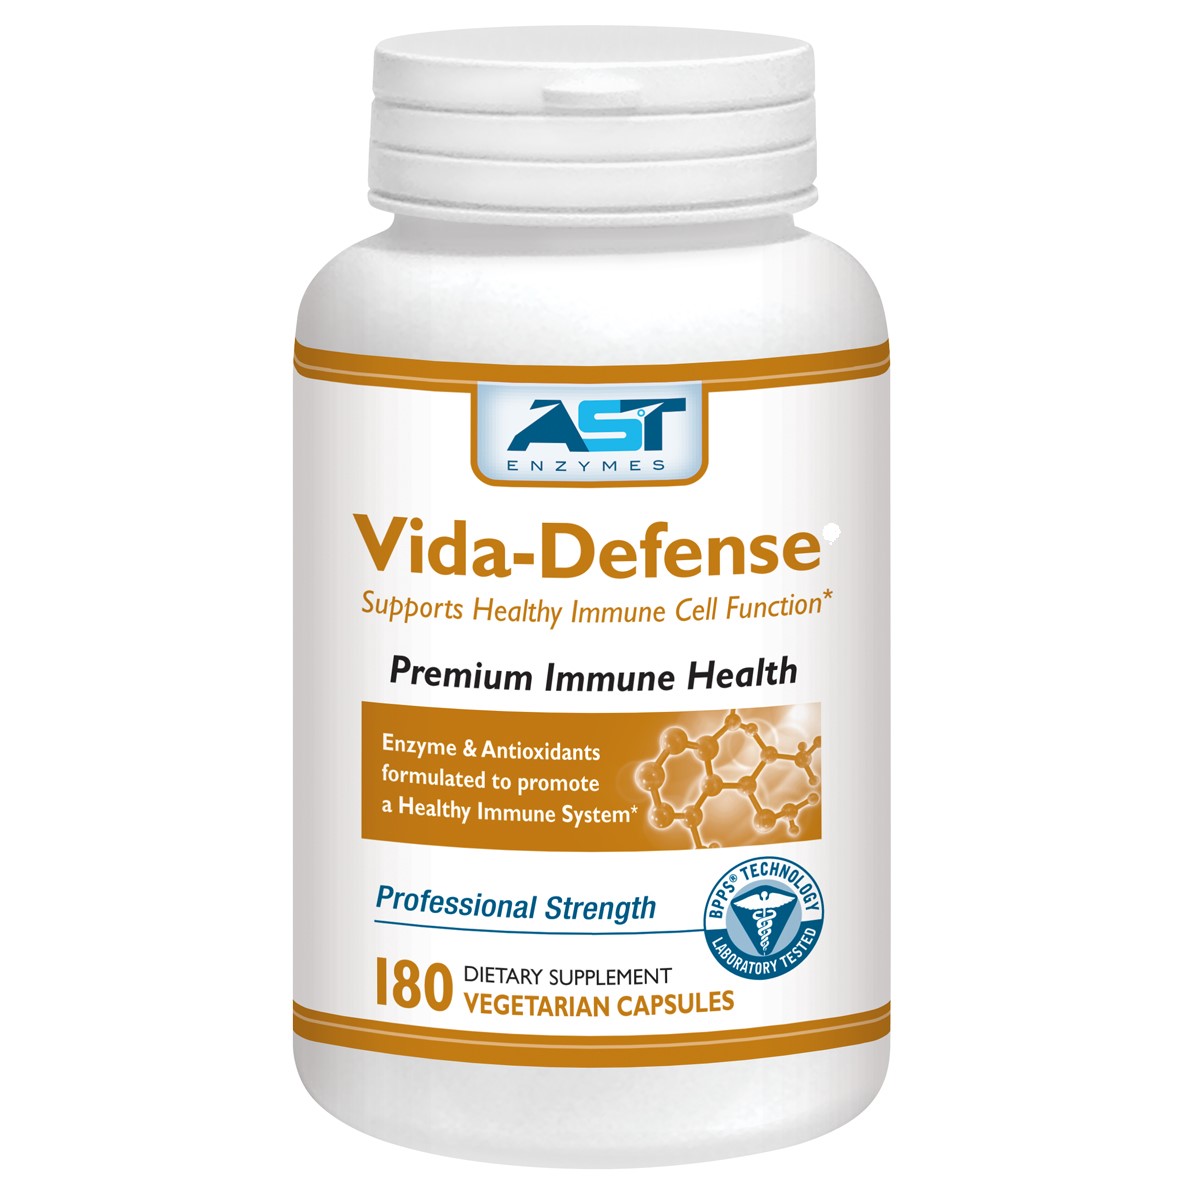 AST Enzymes Vida-Defense